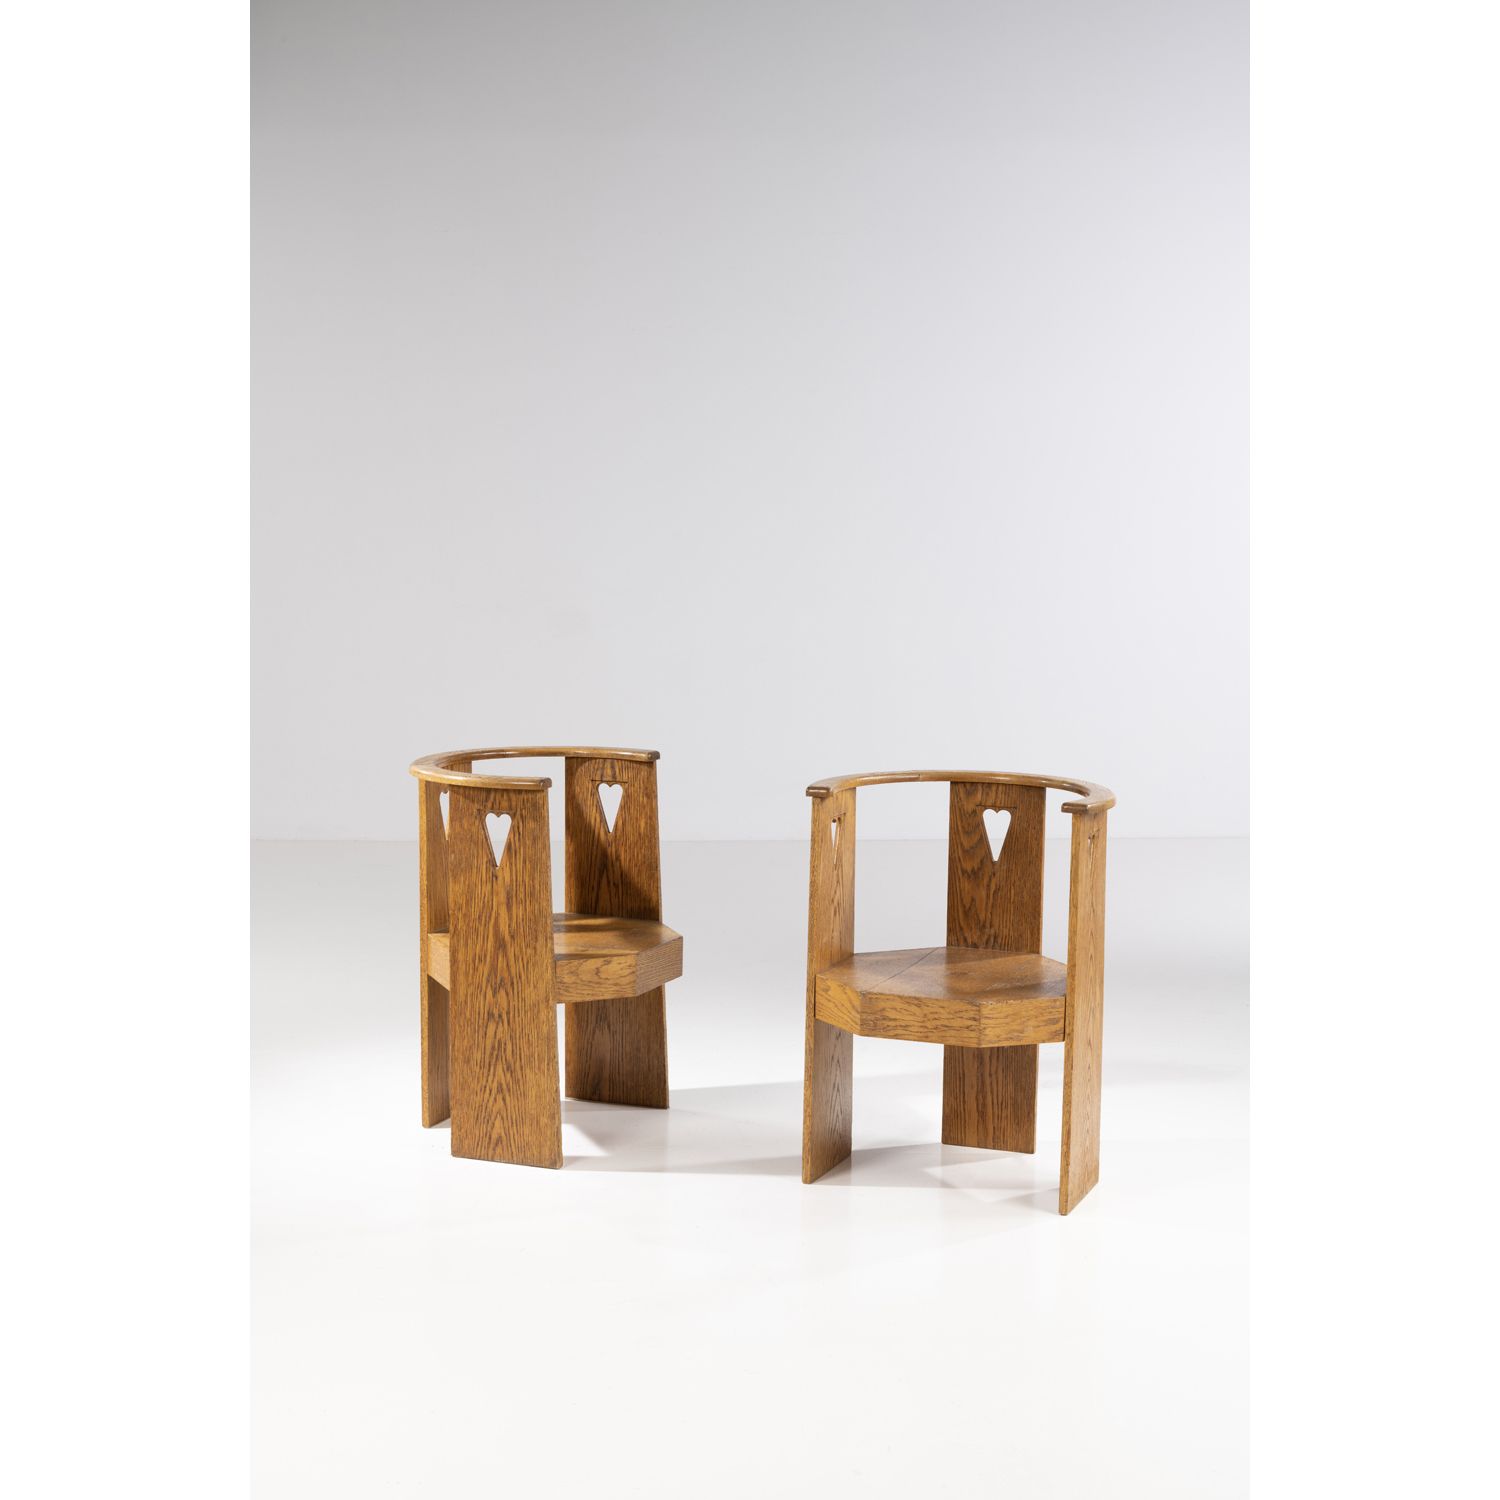 Null Eliel Saarinen (1873-1950)

Paar Sessel

Eiche

Modell entworfen um 1910

H&hellip;